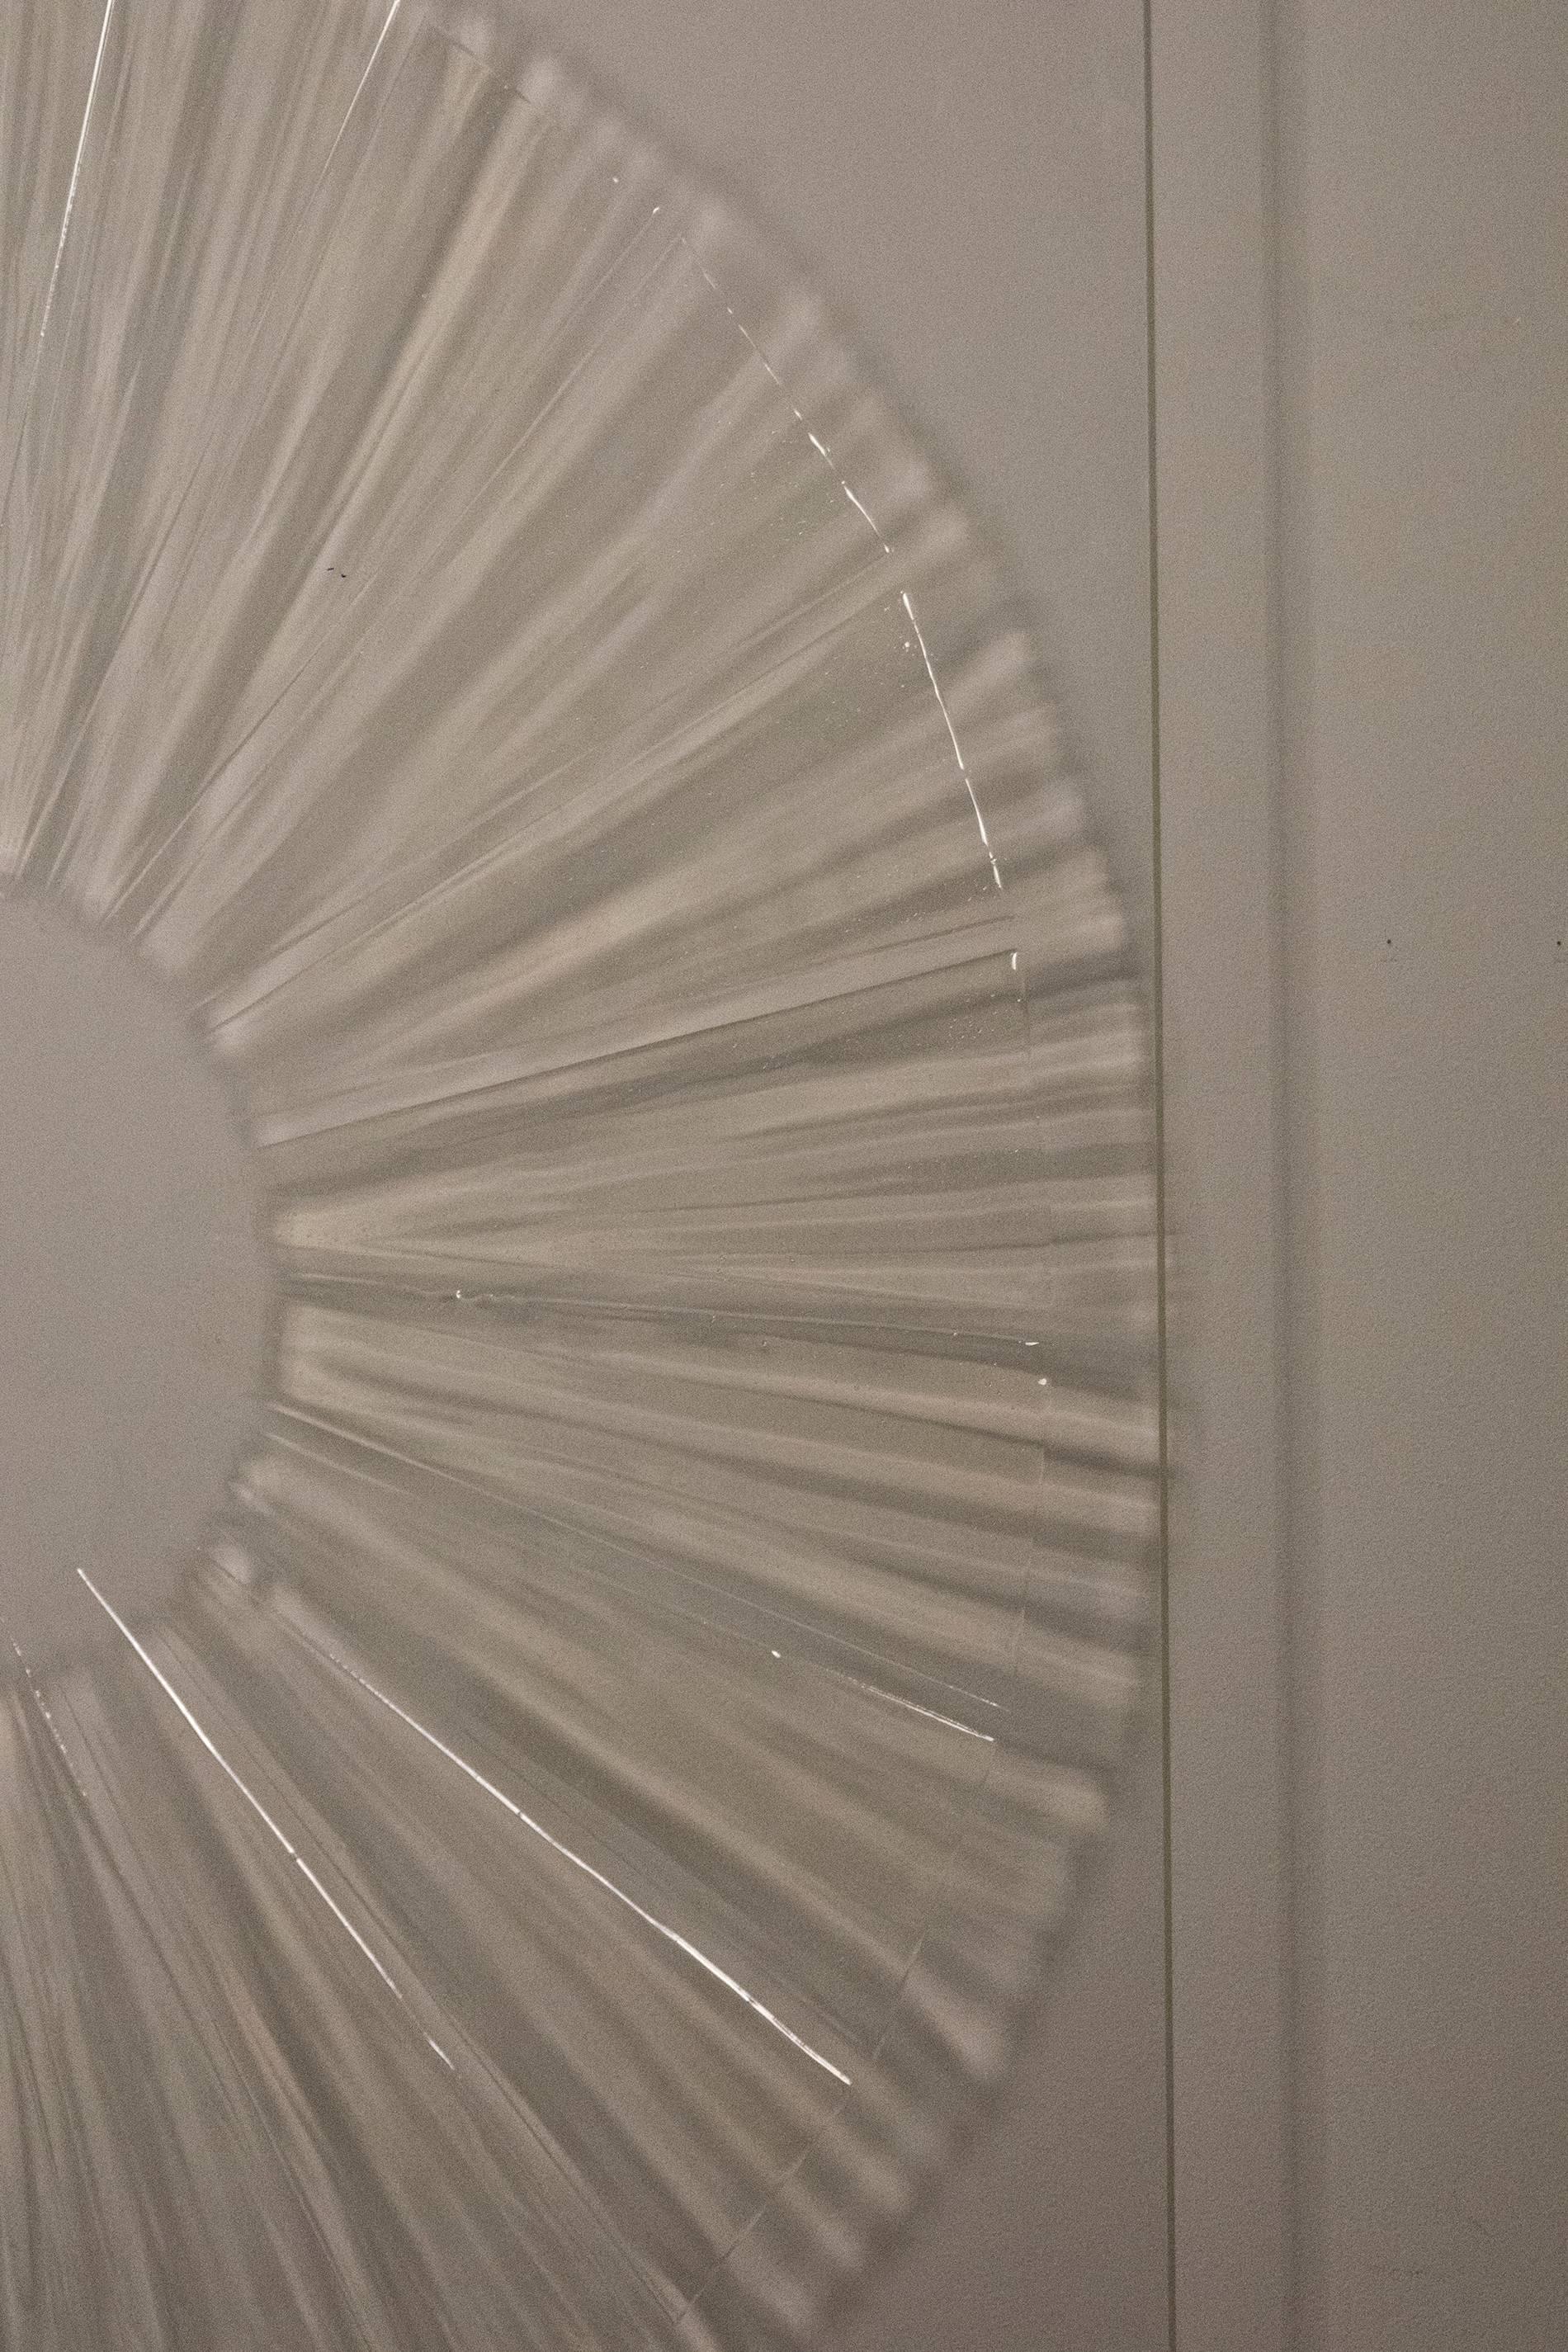 Les ombres projetées par la lumière qui traverse des motifs en gel translucide sur du plexiglas transparent créent une extension non matérielle de l'image. La peinture est fixée au mur et pend à environ quatre pouces du mur. Deux types de matériel